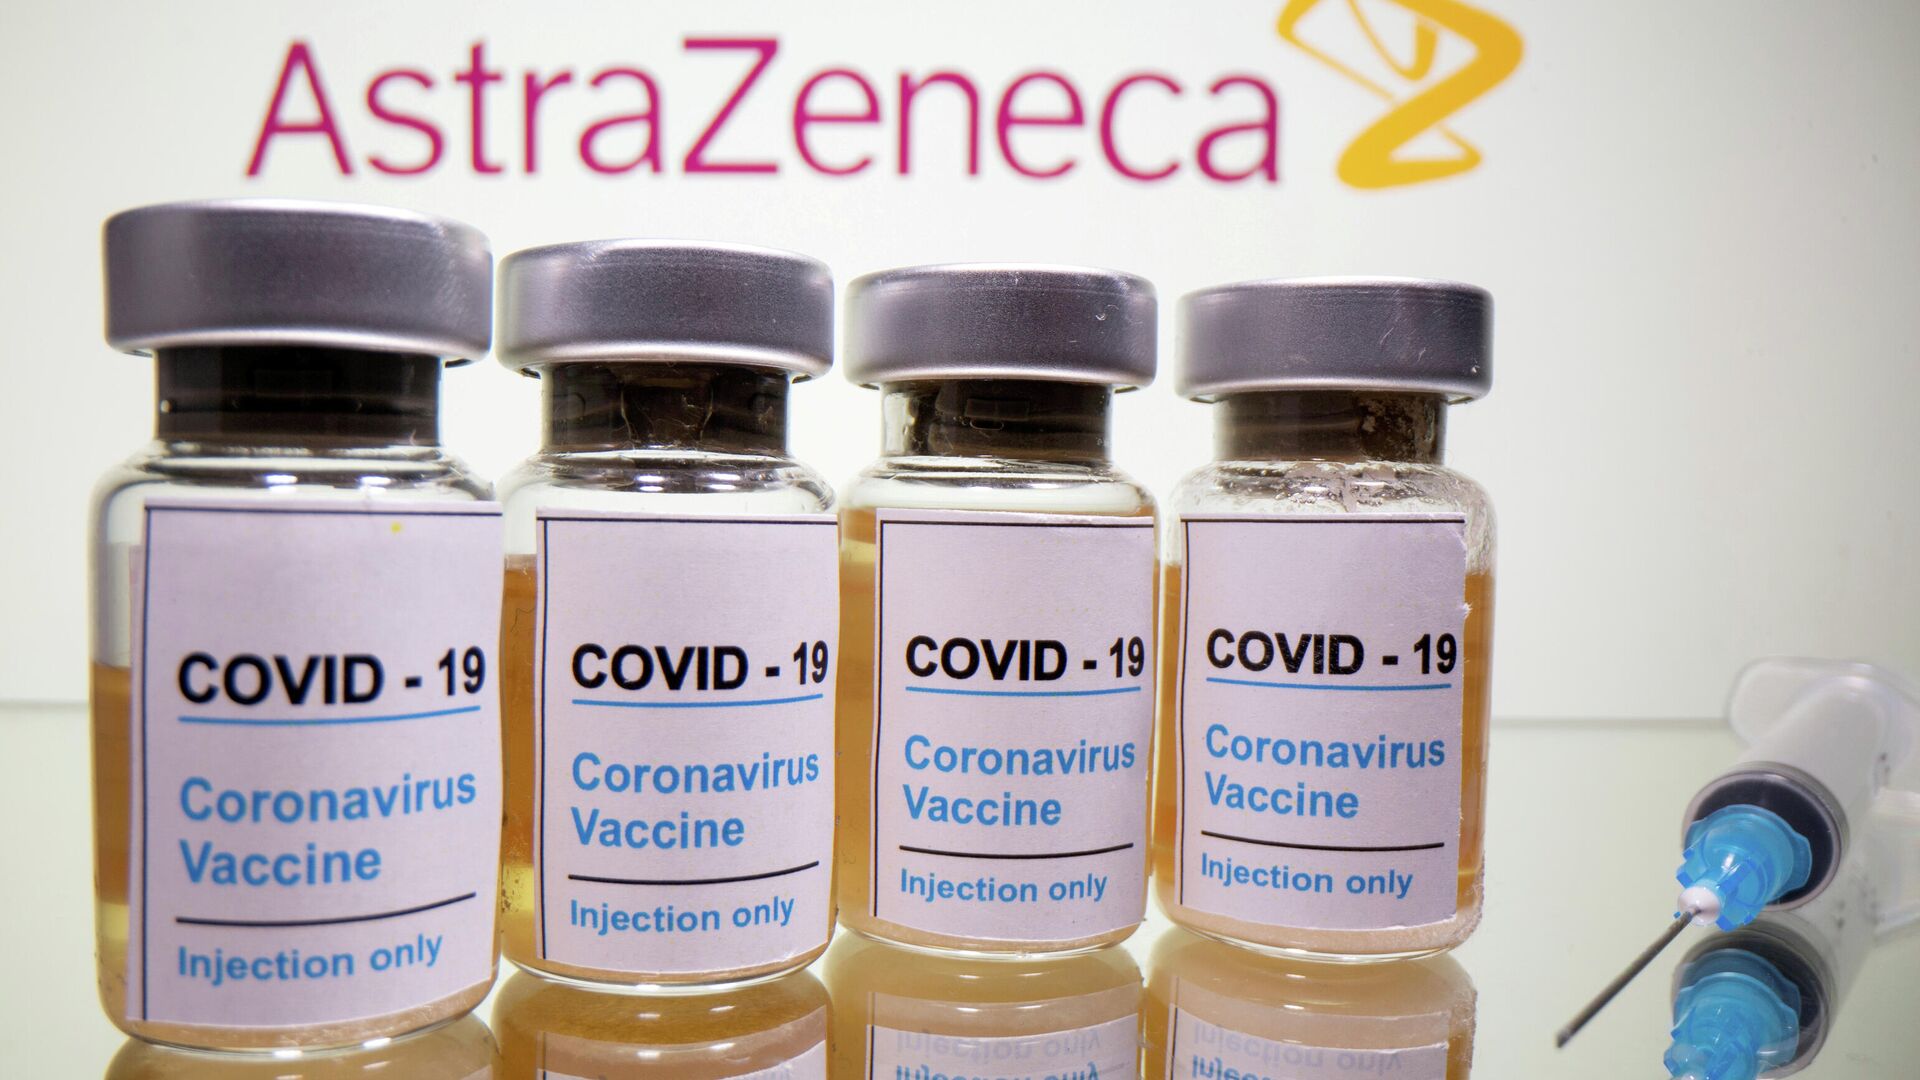 Dosis de la vacuna contra el COVID-19 de AstraZeneca - Sputnik Mundo, 1920, 08.04.2021